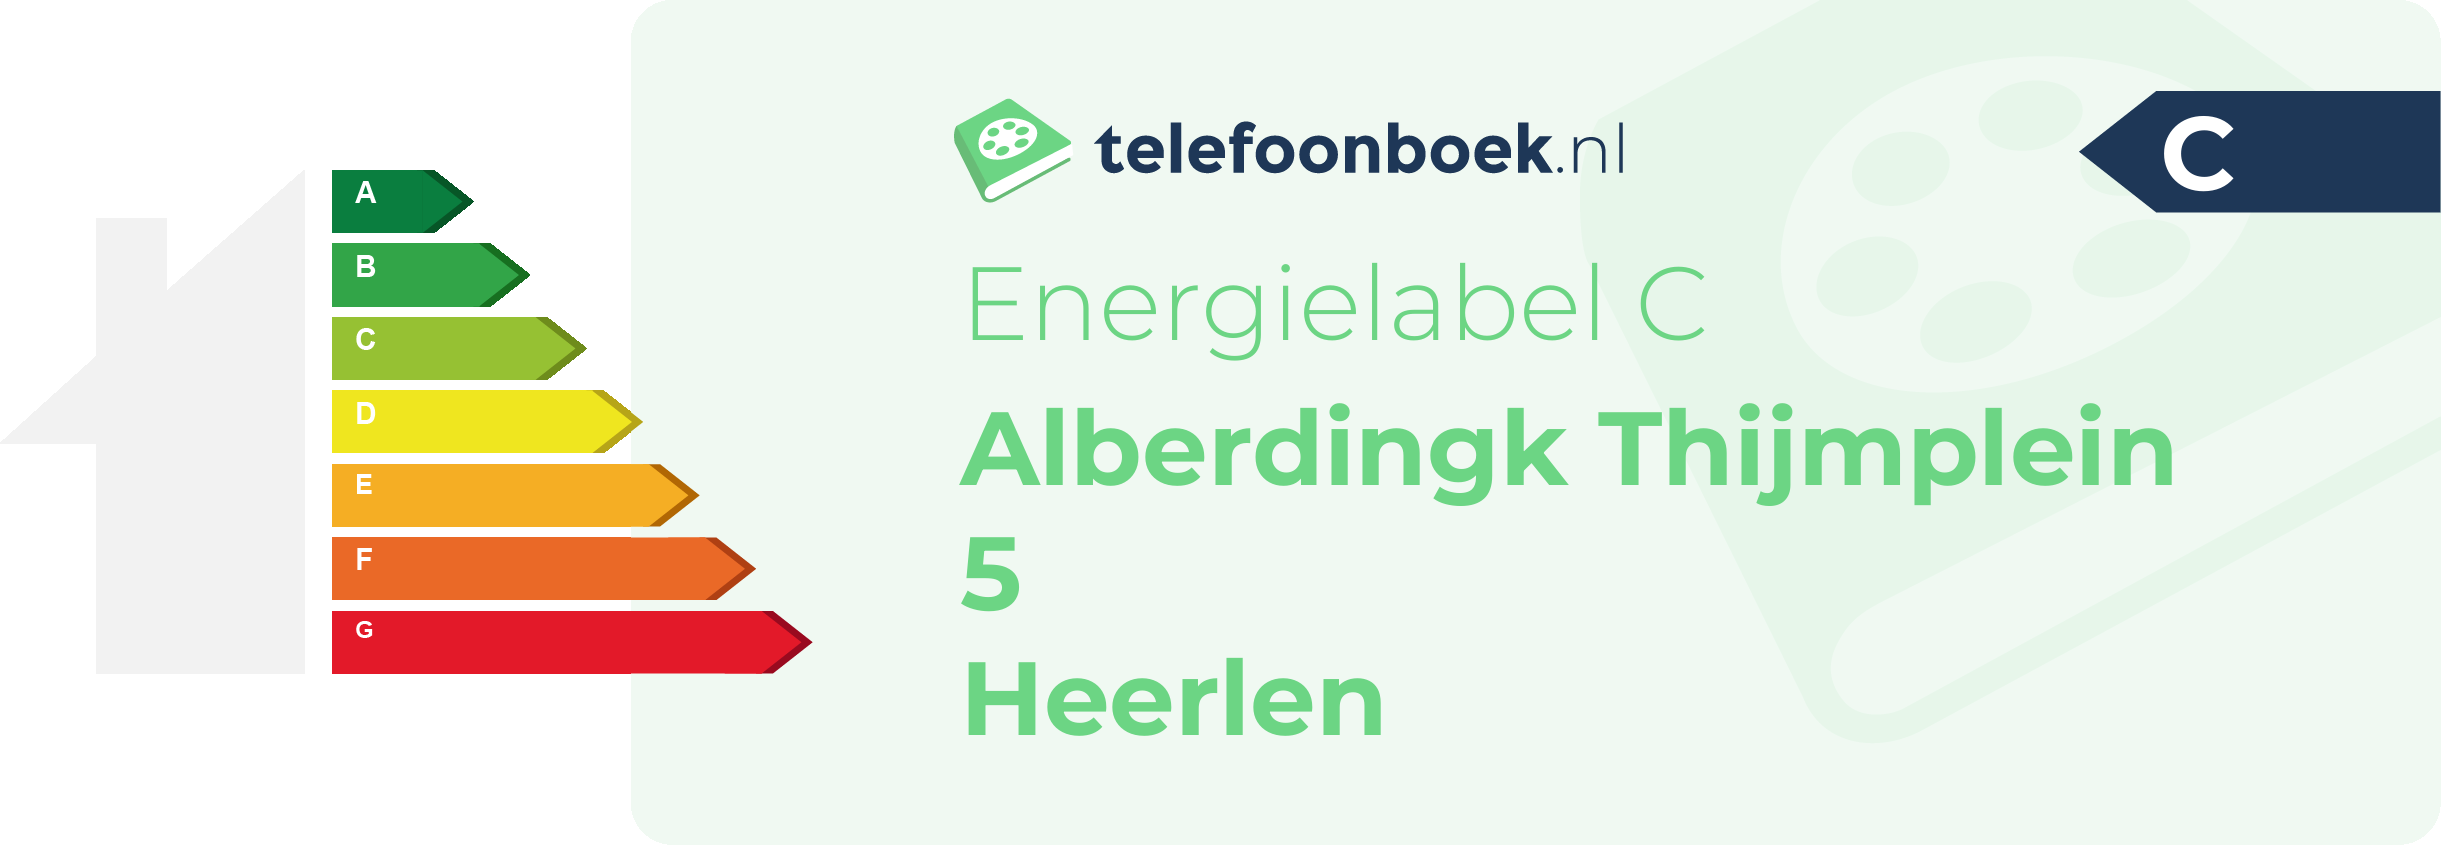 Energielabel Alberdingk Thijmplein 5 Heerlen